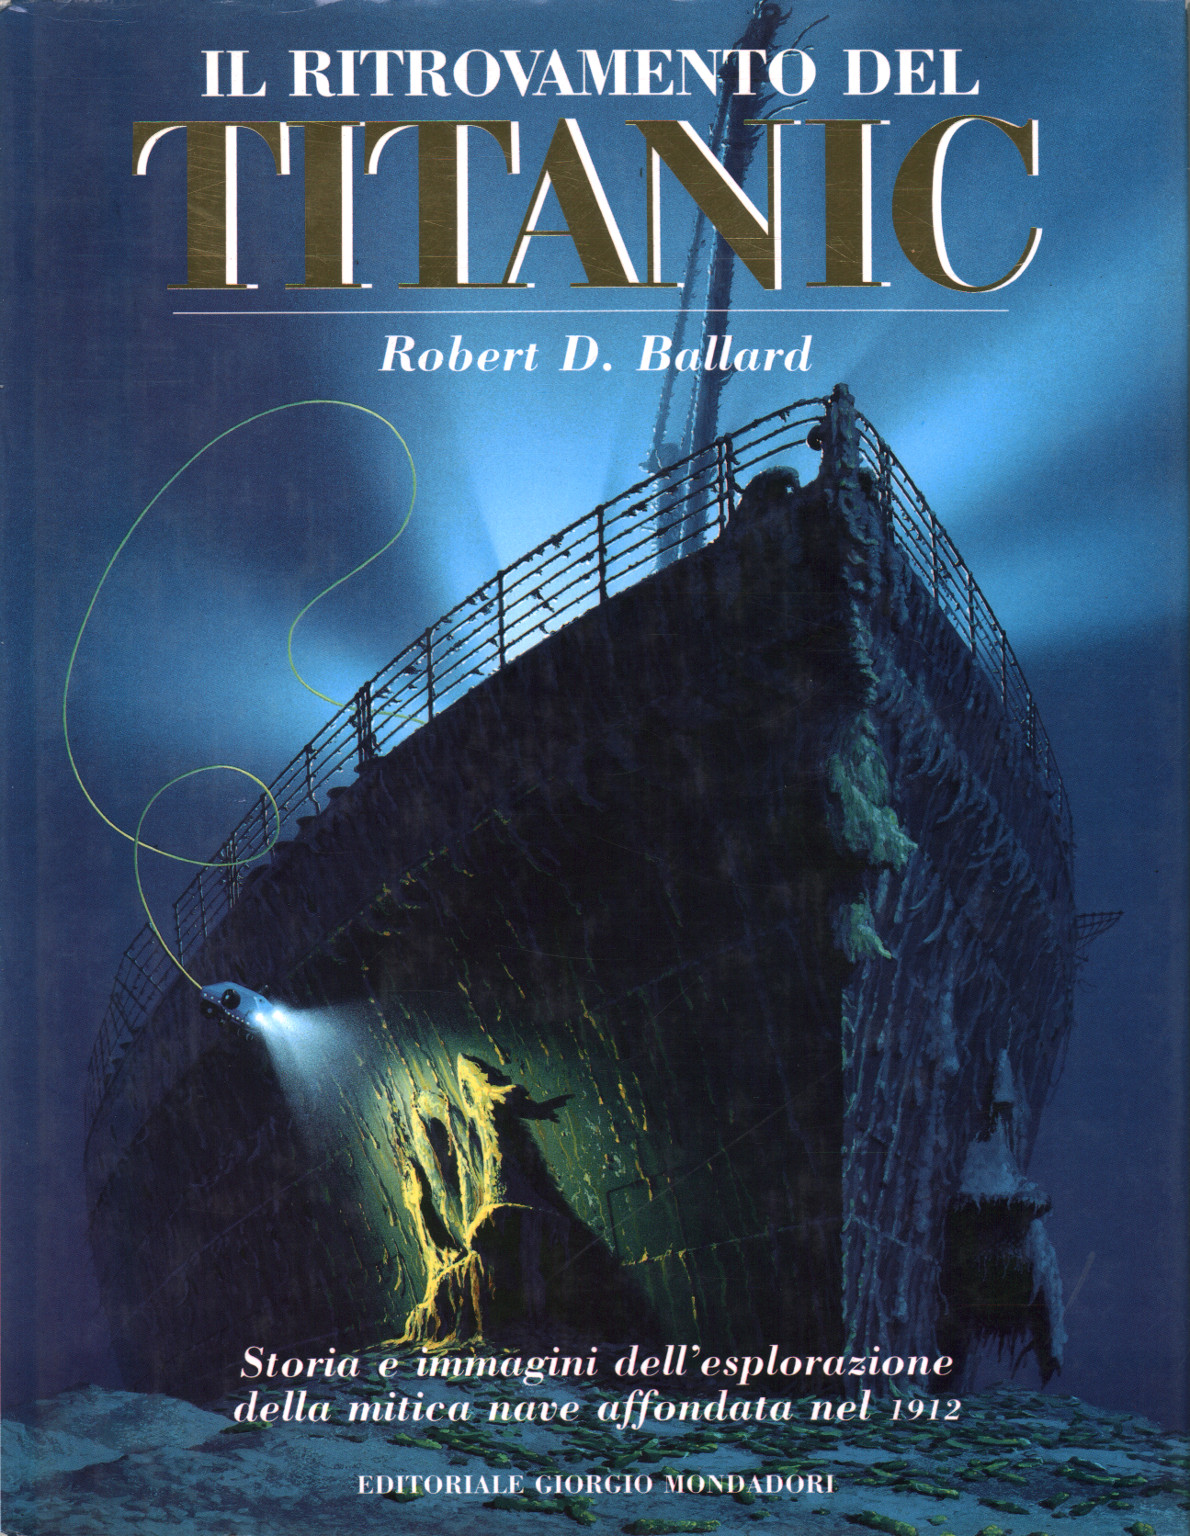 Die entdeckung der "Titanic", s.zu.